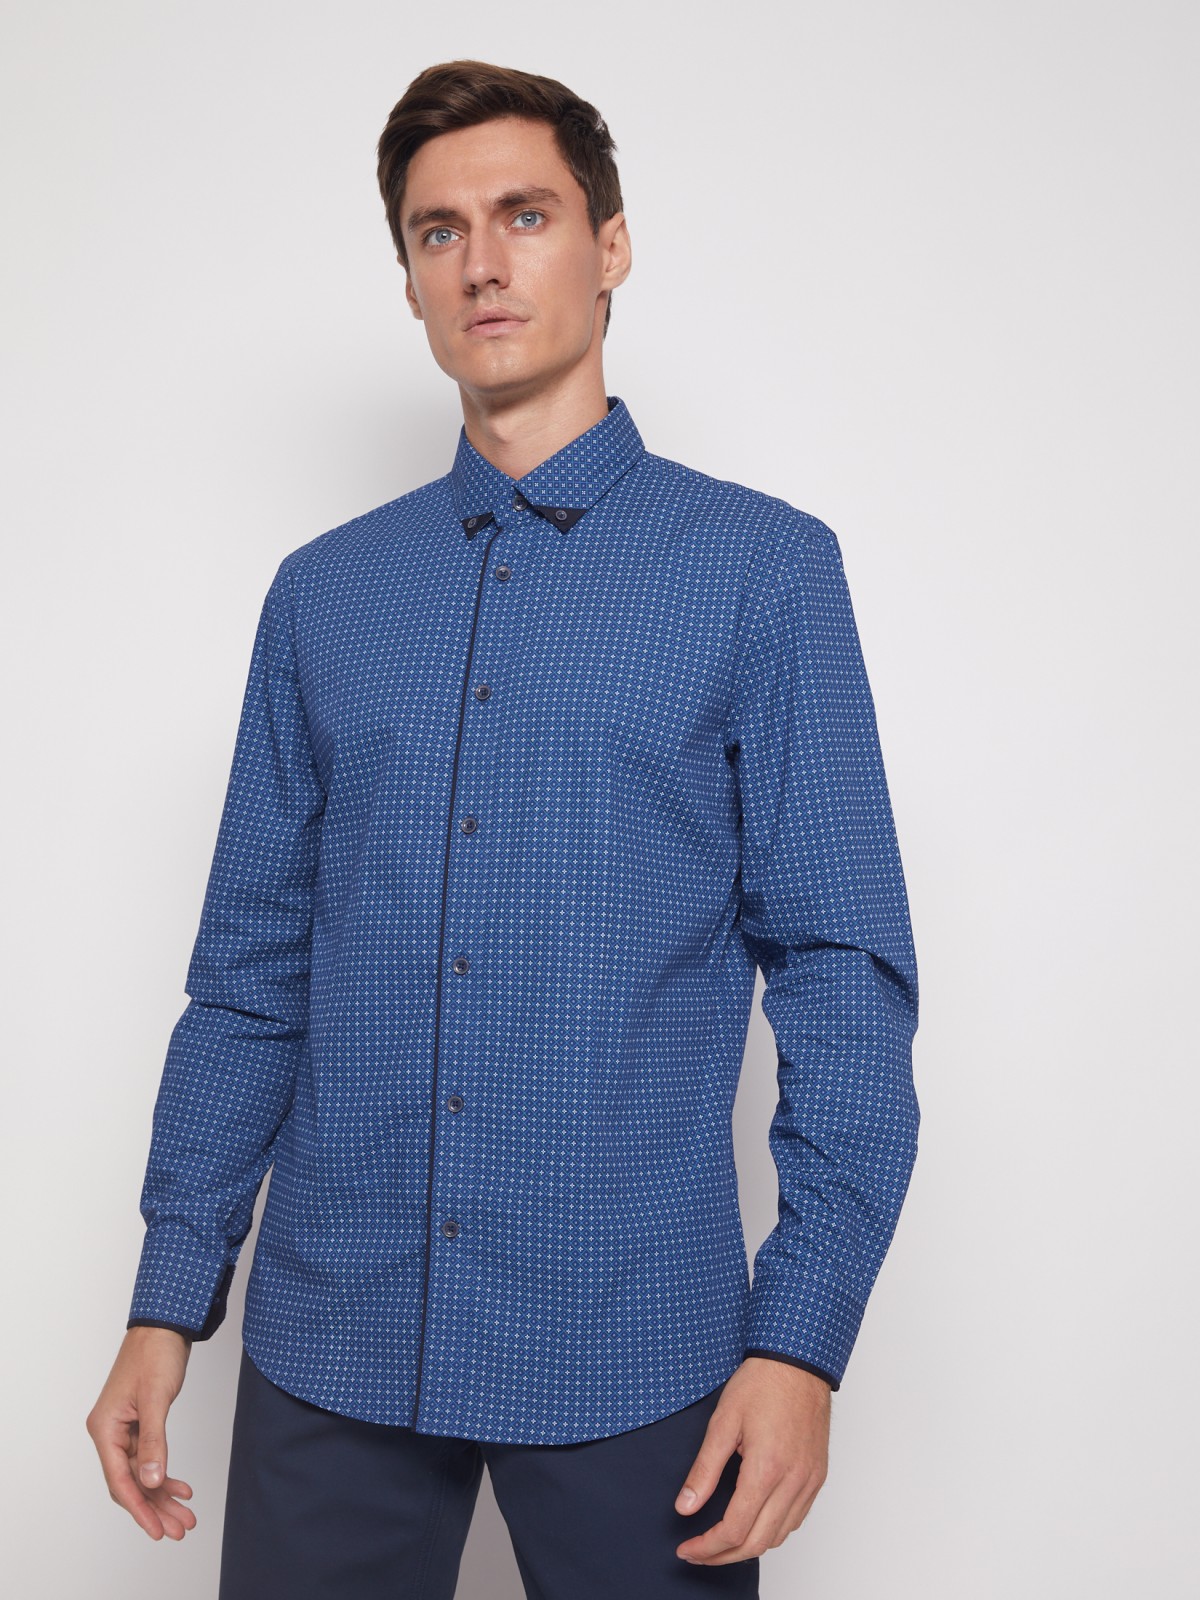 Хлопковая рубашка с мелким принтом zolla 011452159013, цвет голубой, размер M - фото 6